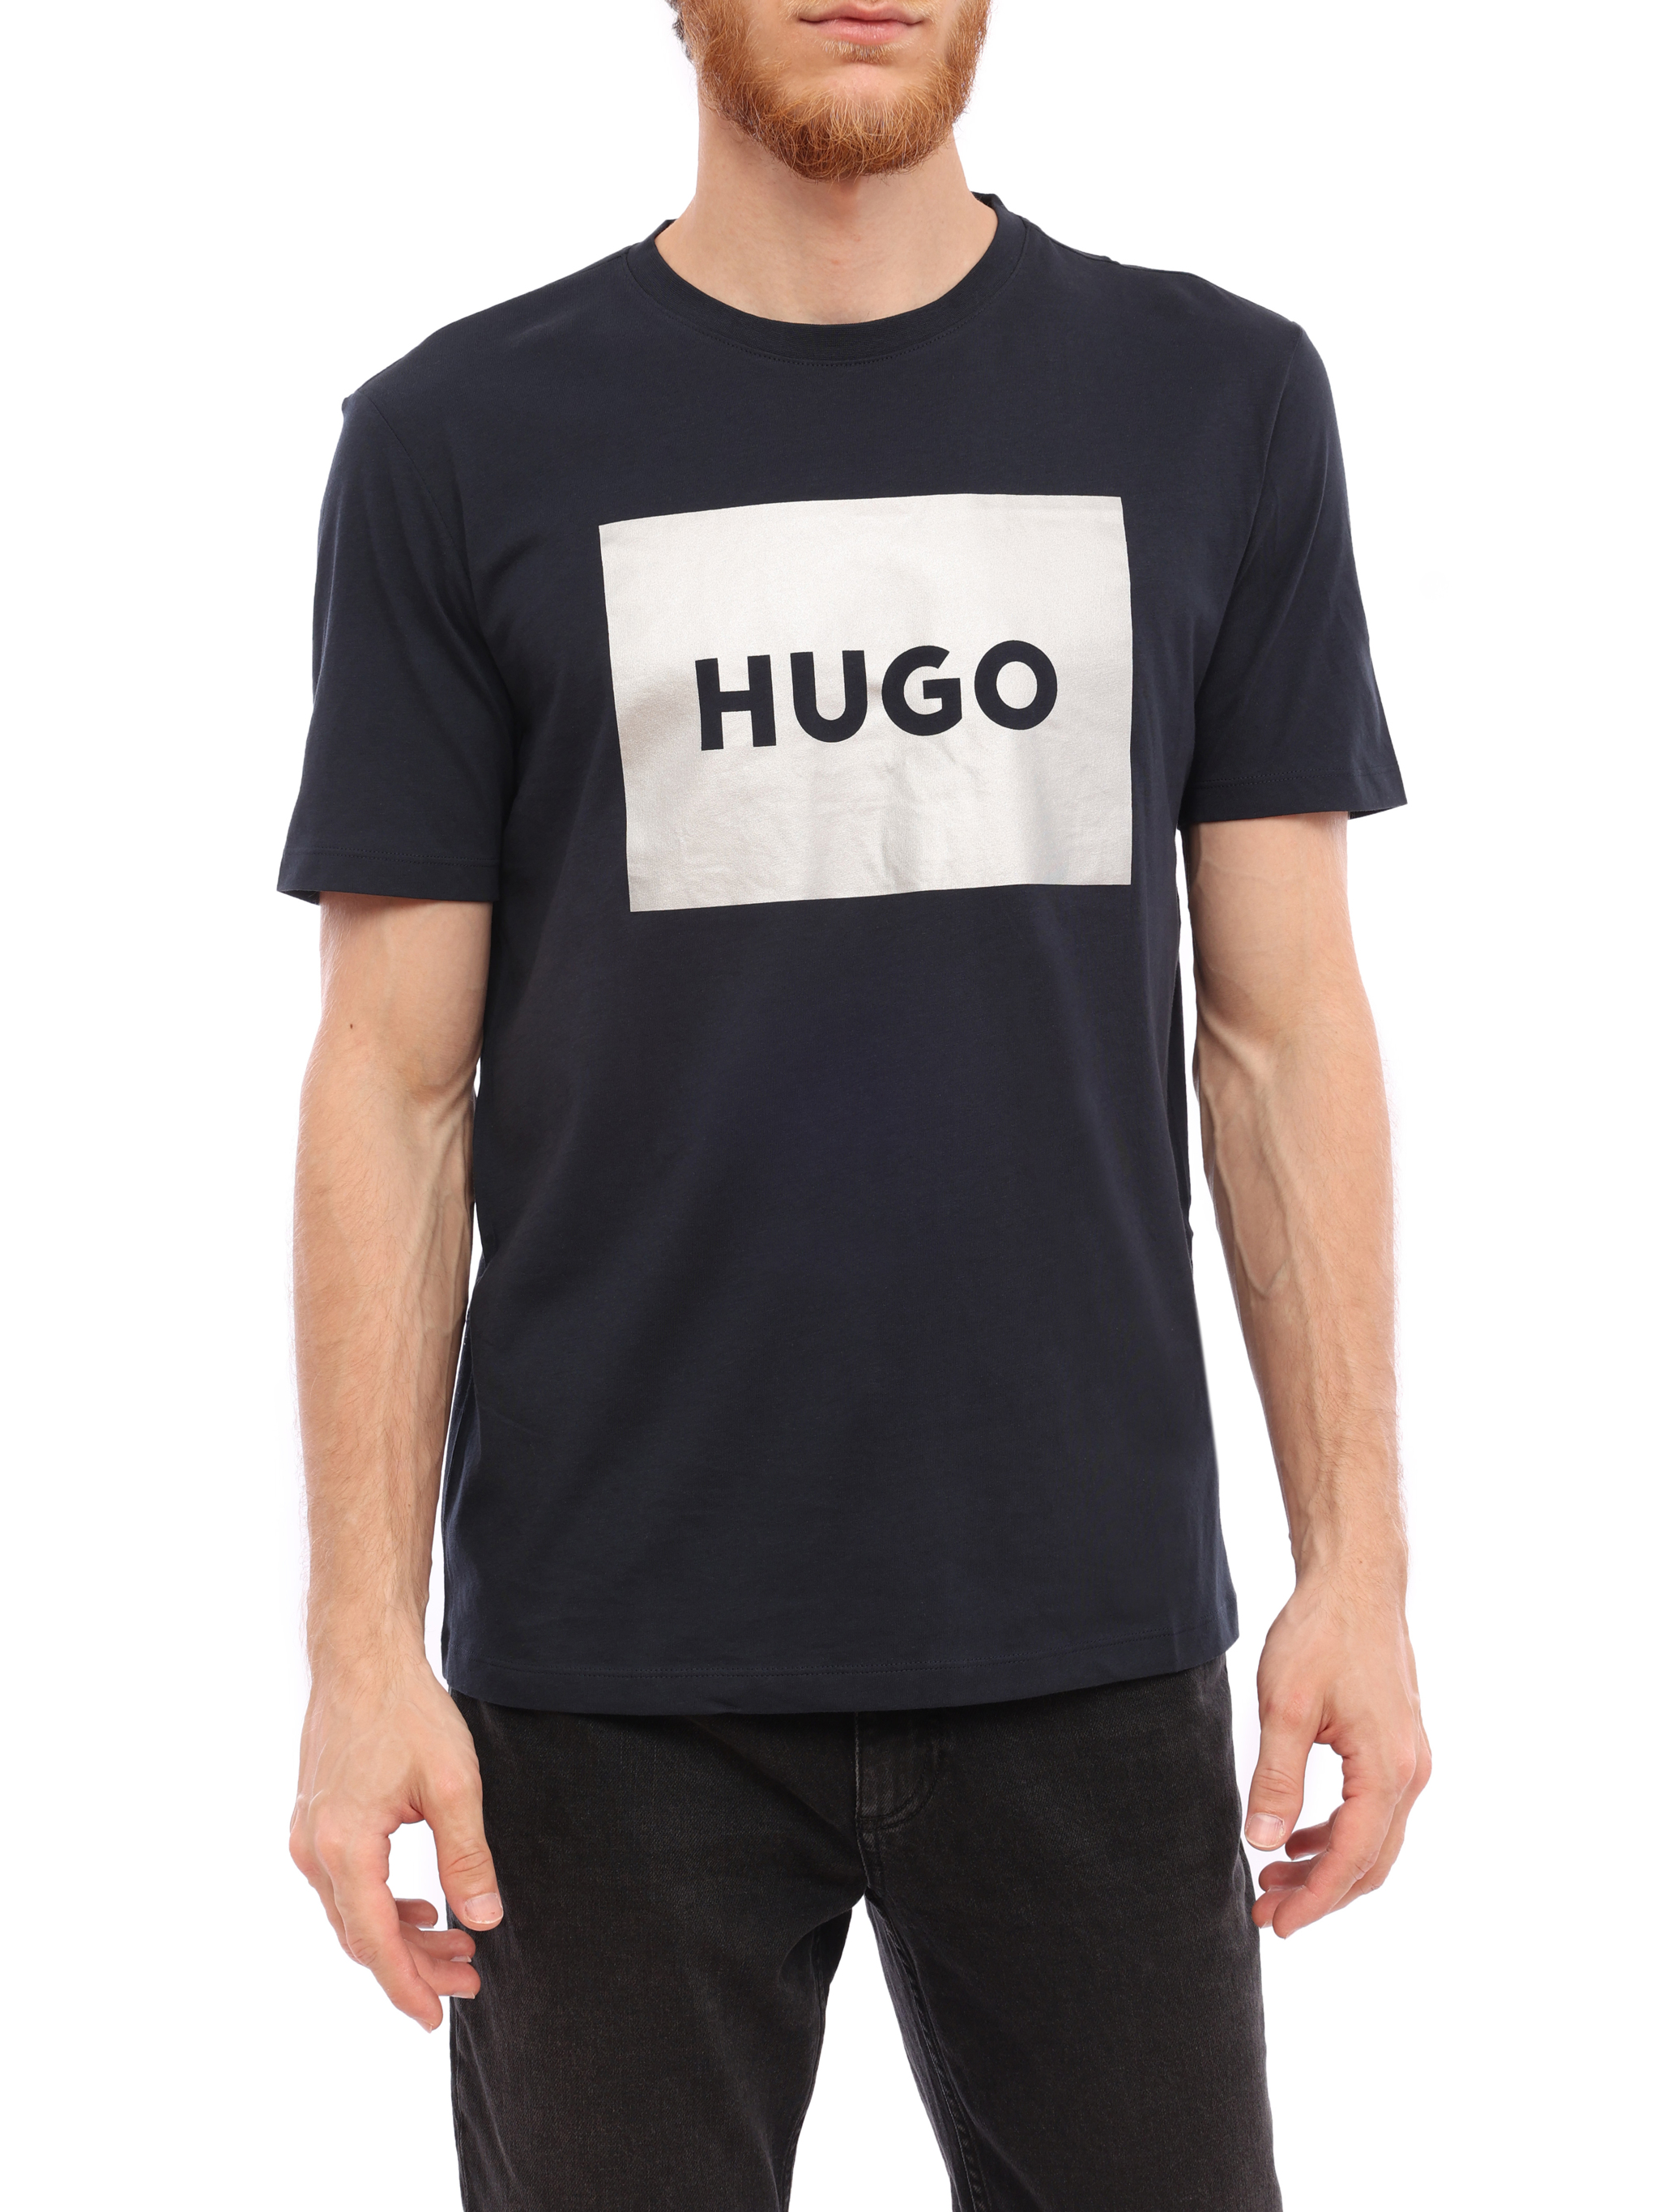 Купить футболку hugo. Футболка Hugo. Футболки Хуго 3055. Футболка Hugo Boss коричневая. Хуго футболка мужская.